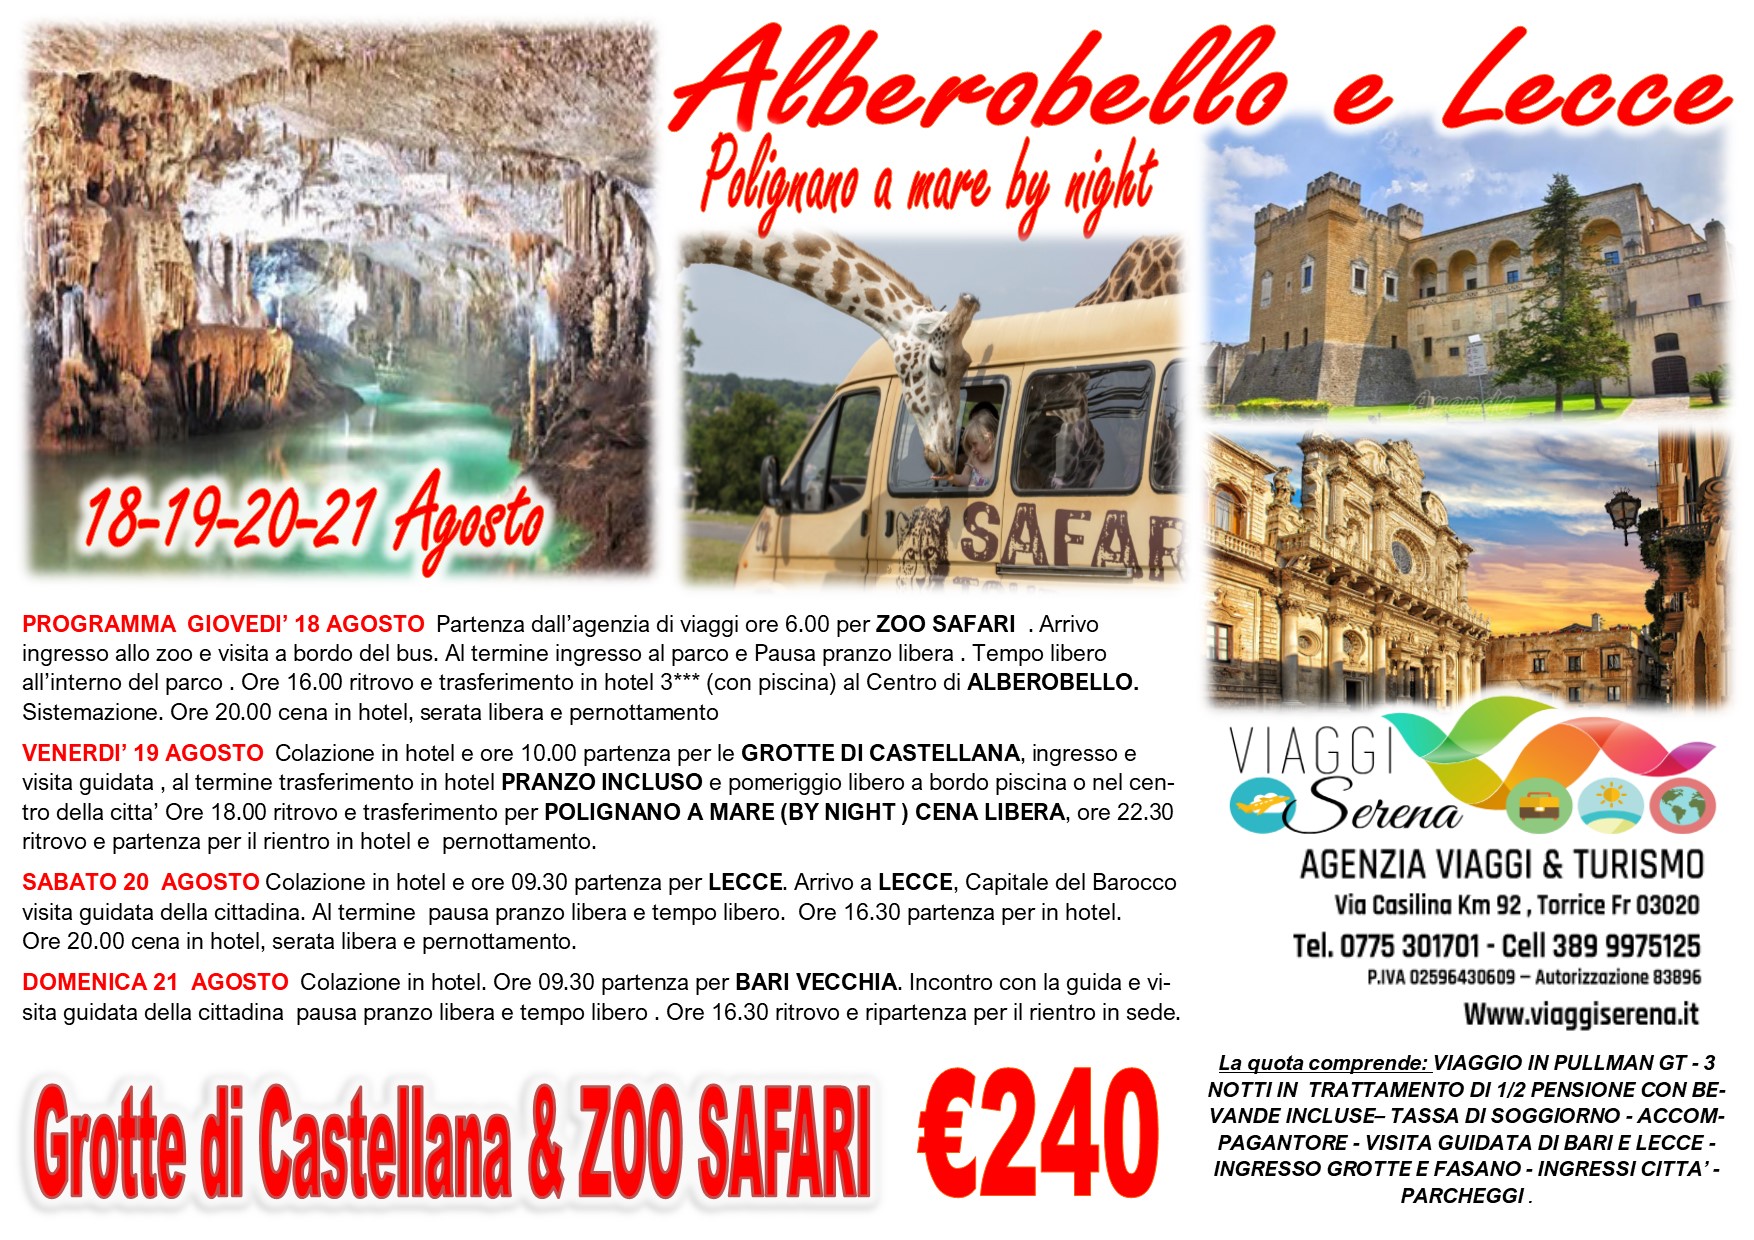 Viaggi di Gruppo: Puglia “Lecce, Alberobello, Zoo safari & Grotte di Castellana” 18-19-20-21 Agosto €240,00